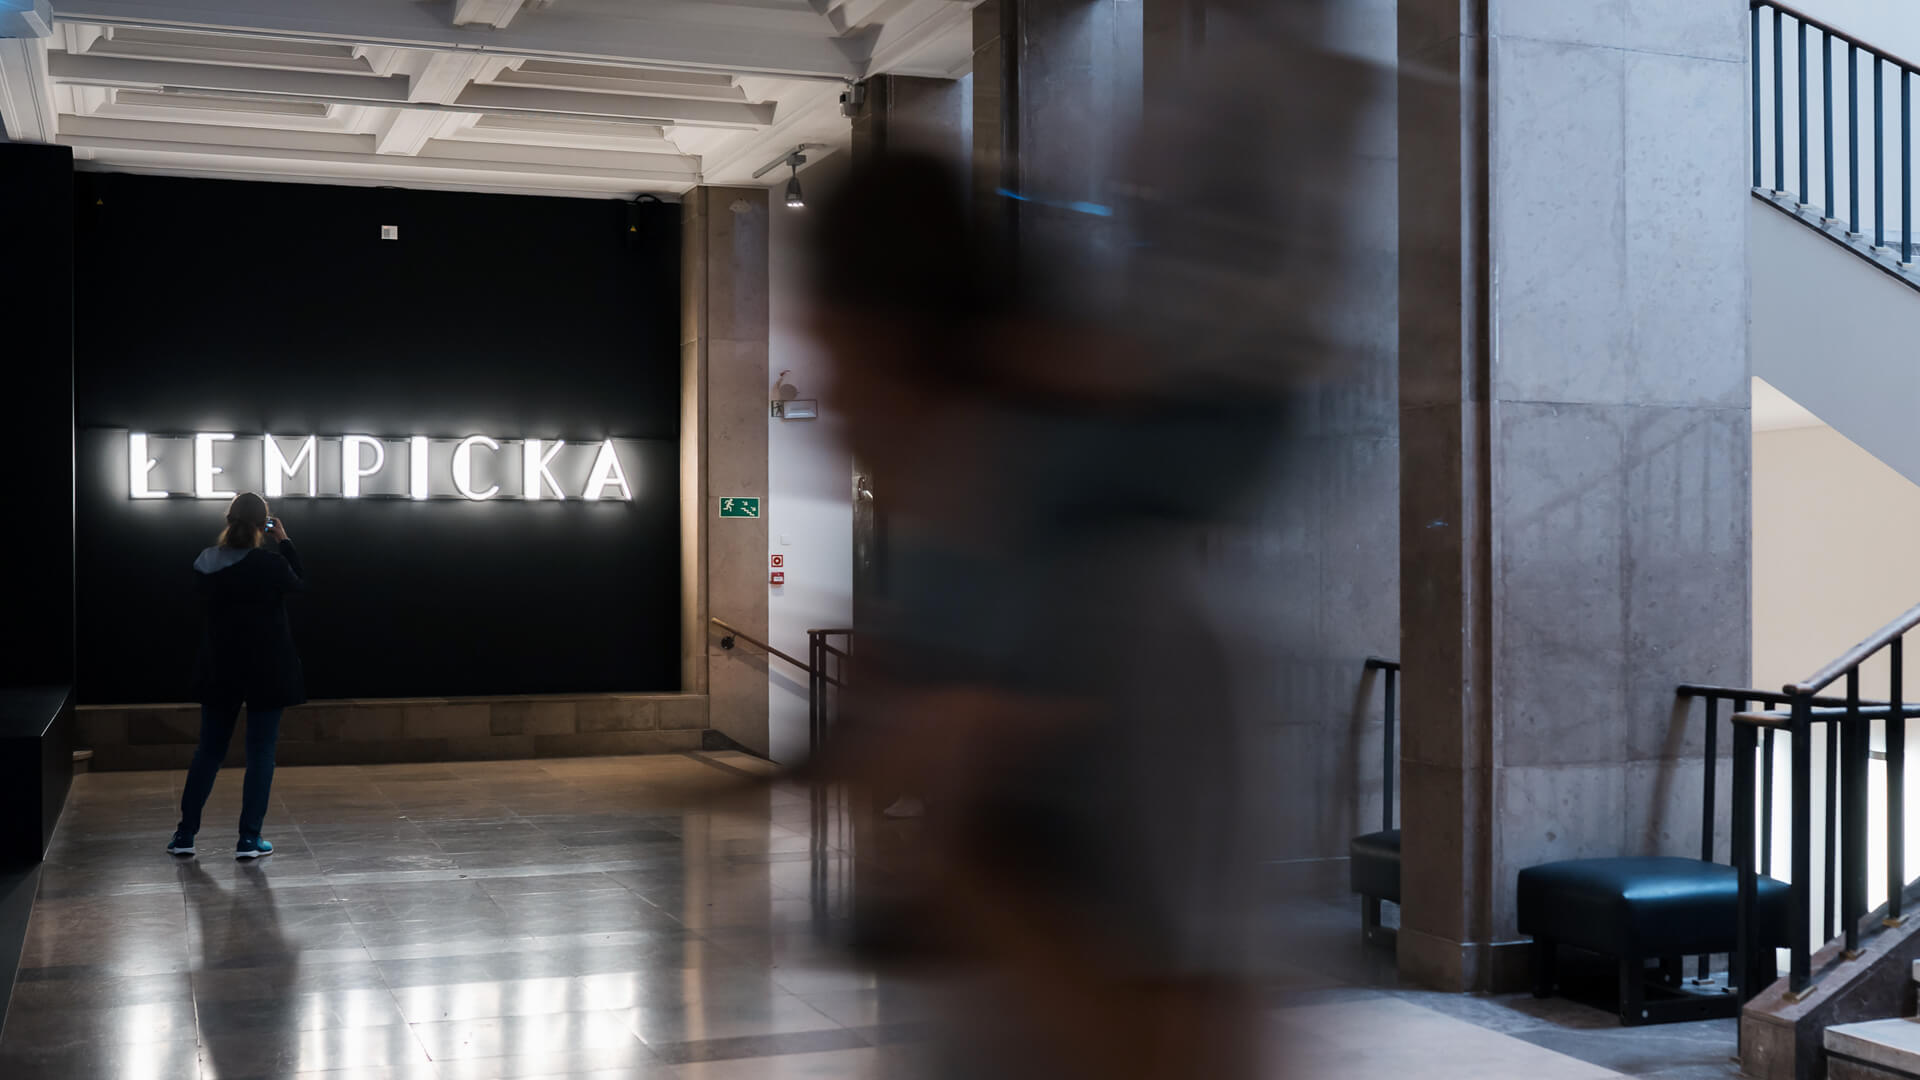 Neon Tamara Lempicka - Ausstellung mit Leuchtreklame im Krakauer Museum